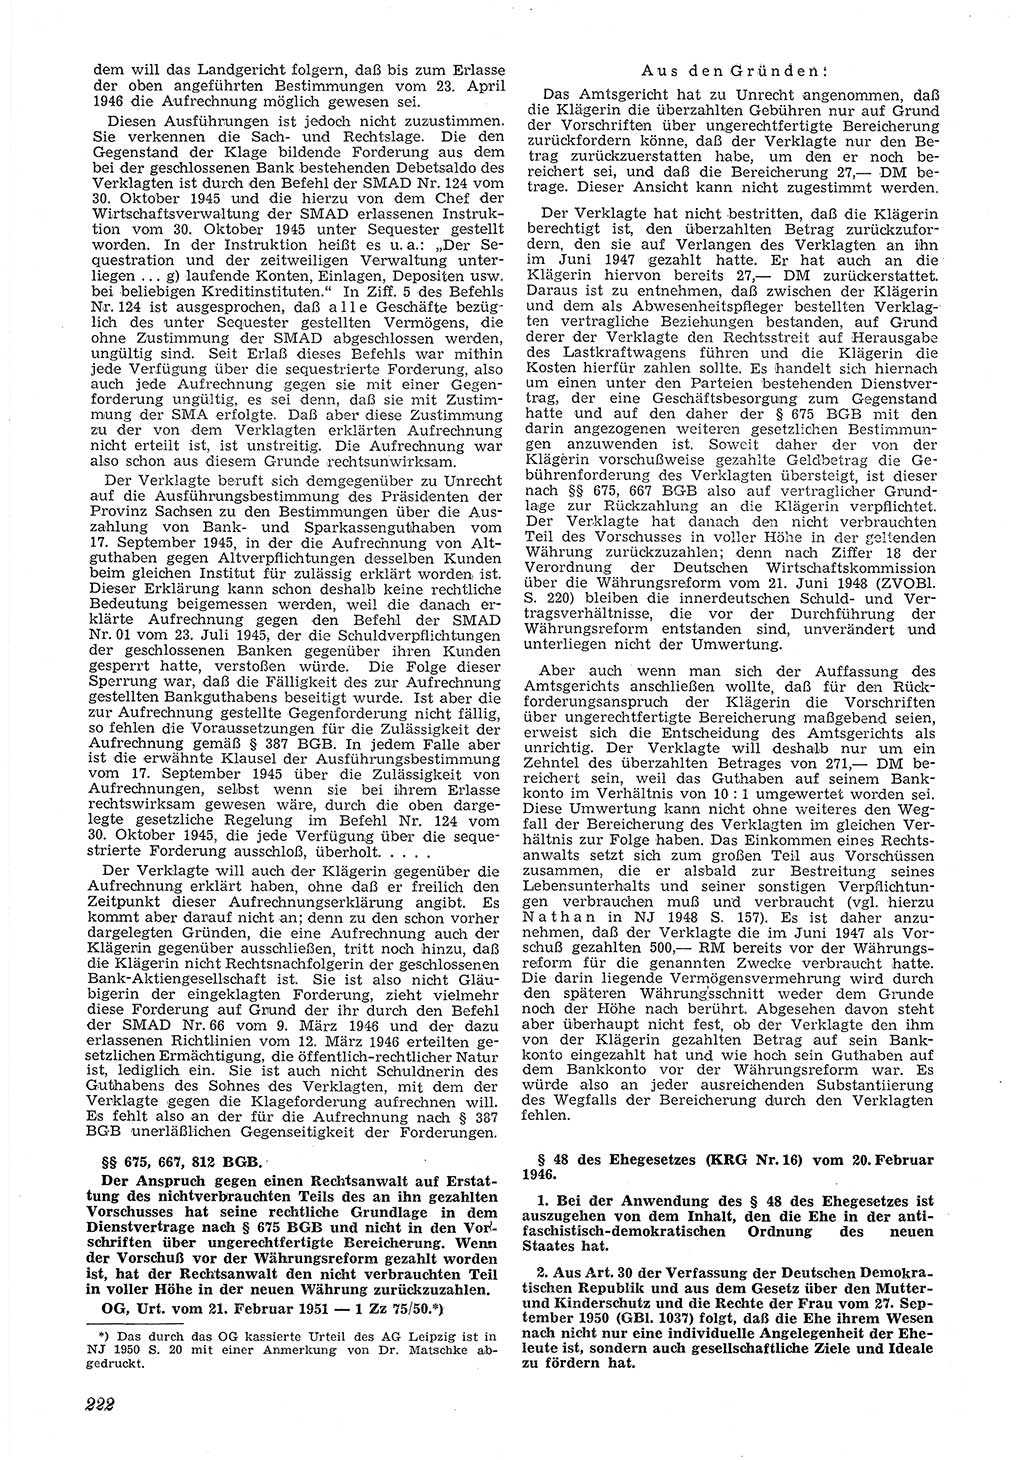 Neue Justiz (NJ), Zeitschrift für Recht und Rechtswissenschaft [Deutsche Demokratische Republik (DDR)], 5. Jahrgang 1951, Seite 222 (NJ DDR 1951, S. 222)